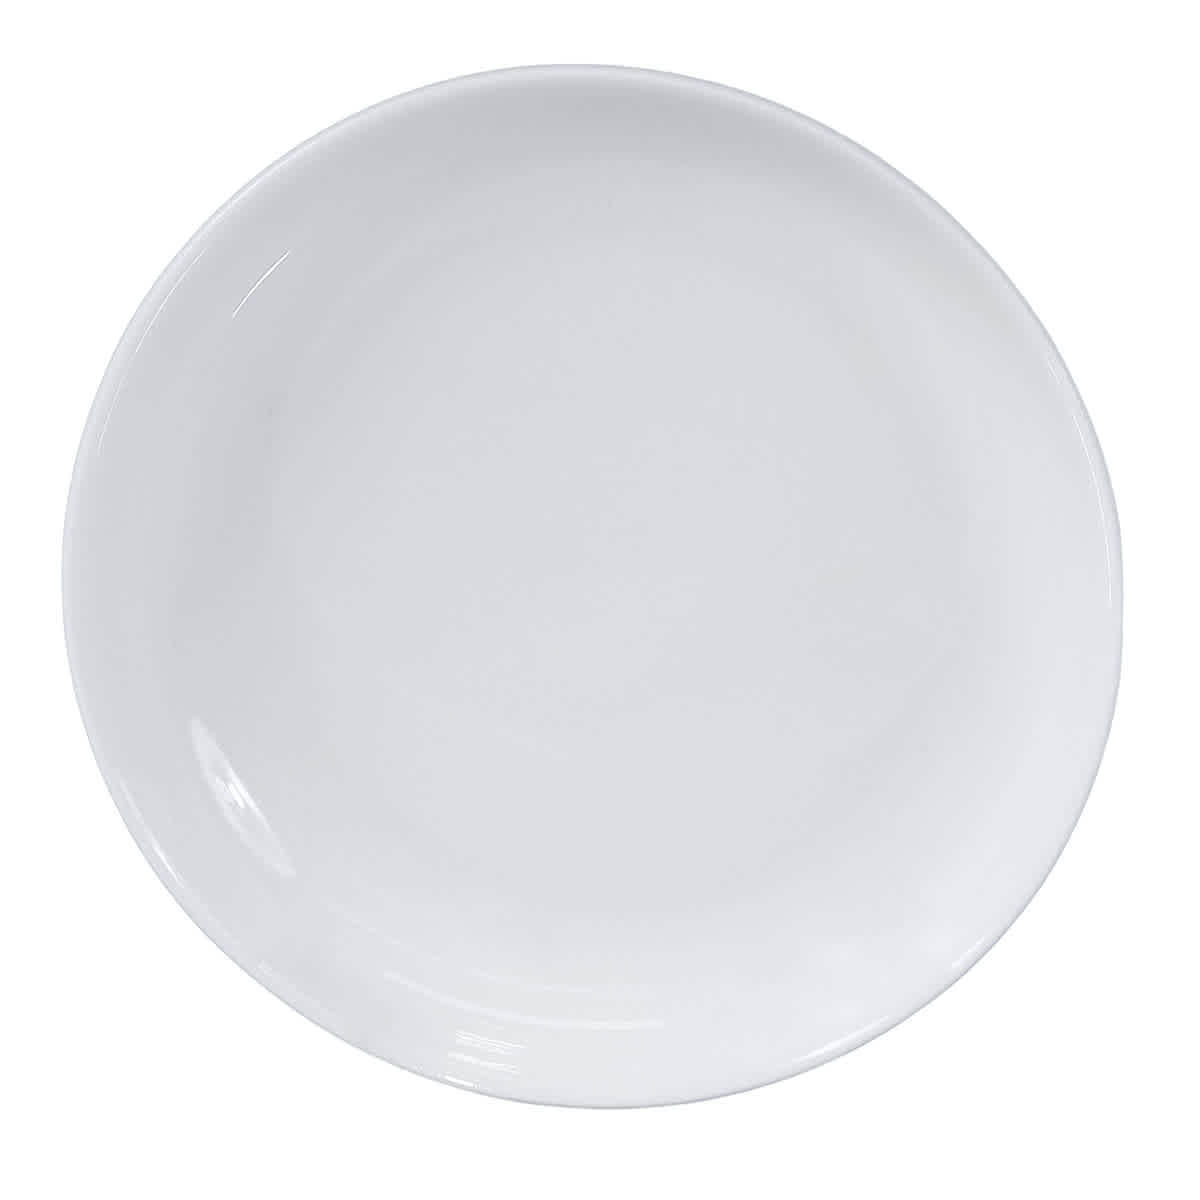 Ginori 1735 Oggetti Festooned Small Plate In White